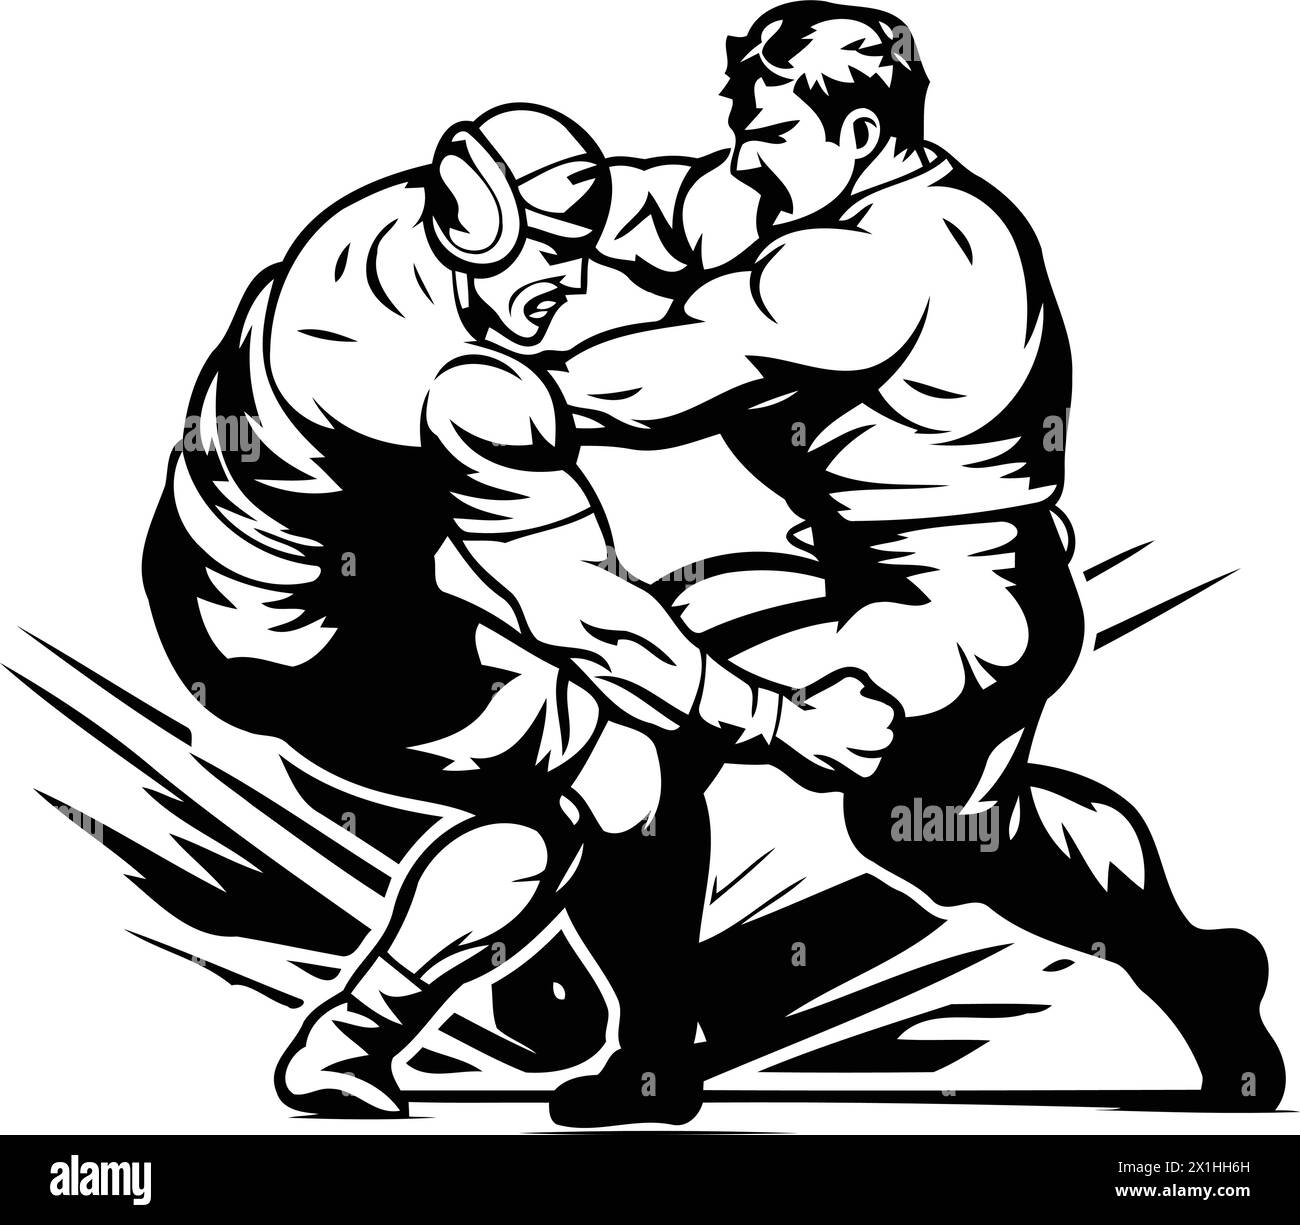 Rimorchiatore di guerra. Illustrazione vettoriale di uno scontro tra due combattenti. Illustrazione Vettoriale